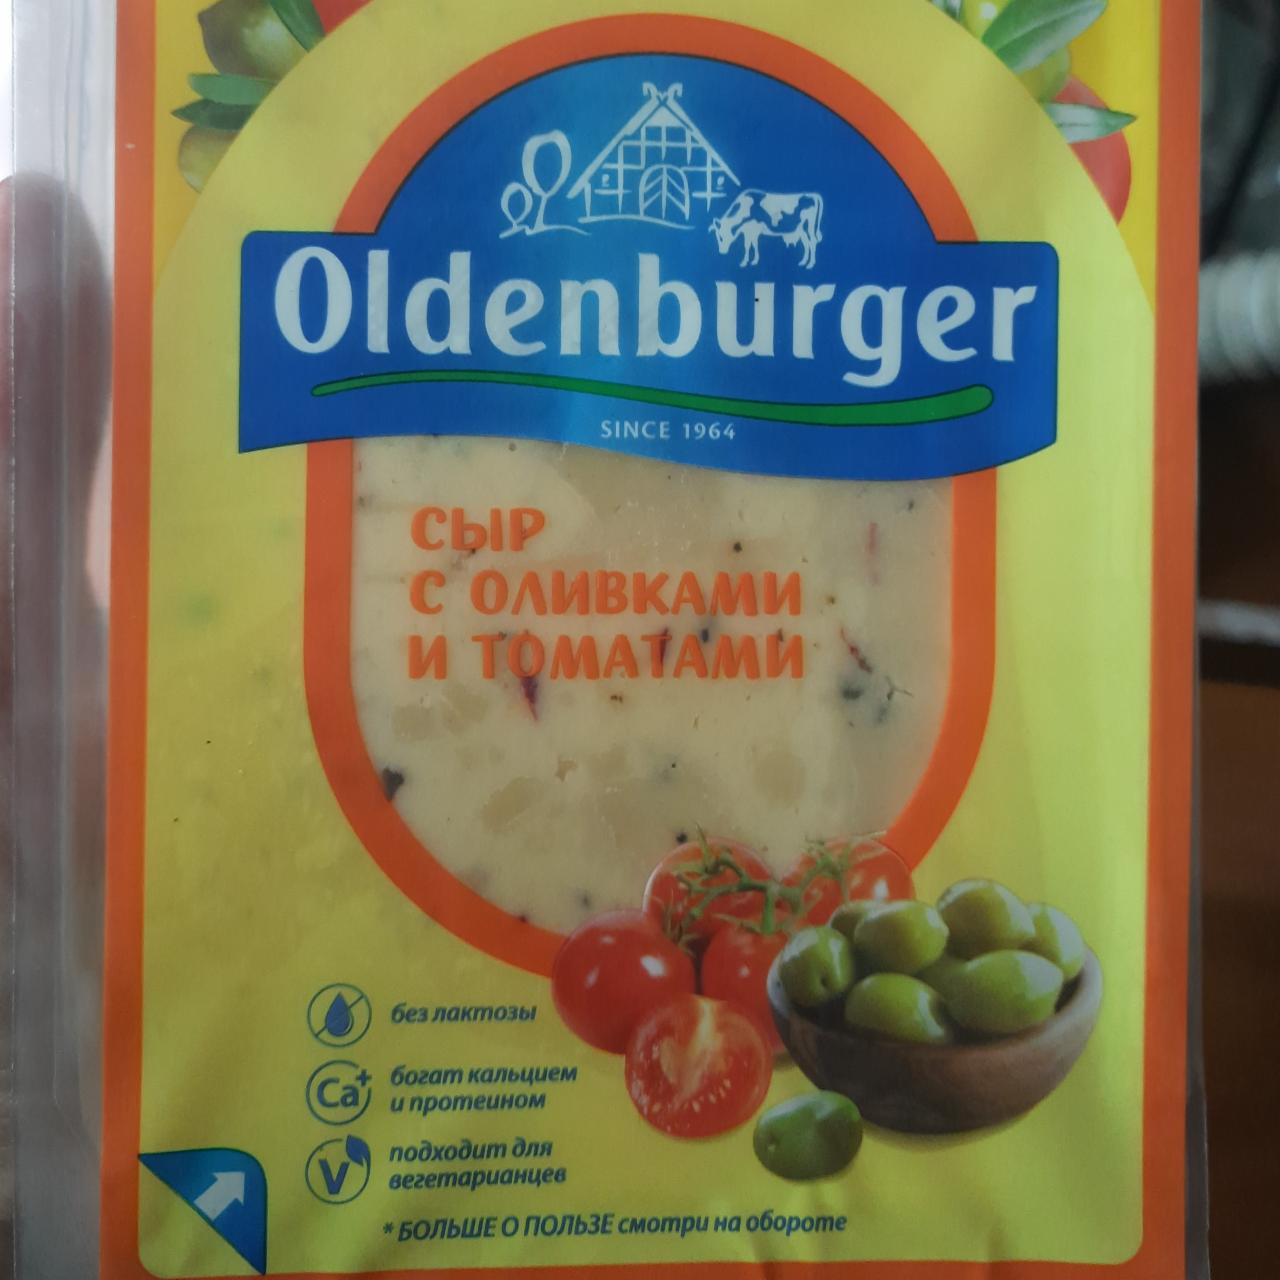 Фото - Сыр с оливками и томатами Oldenburger